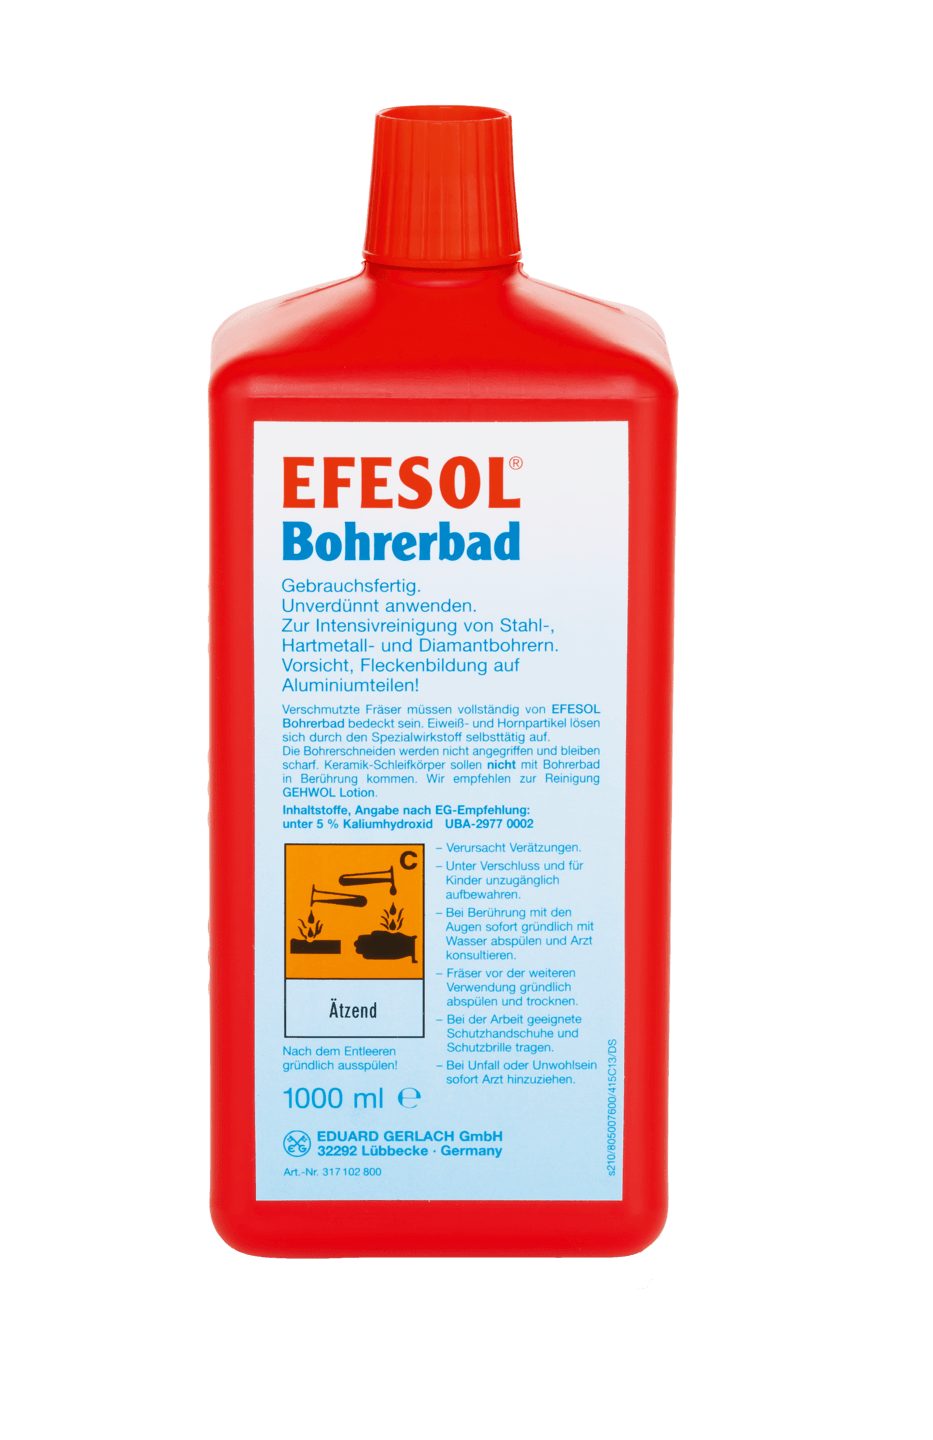 GEHWOL - Efesol-Bohrerbad